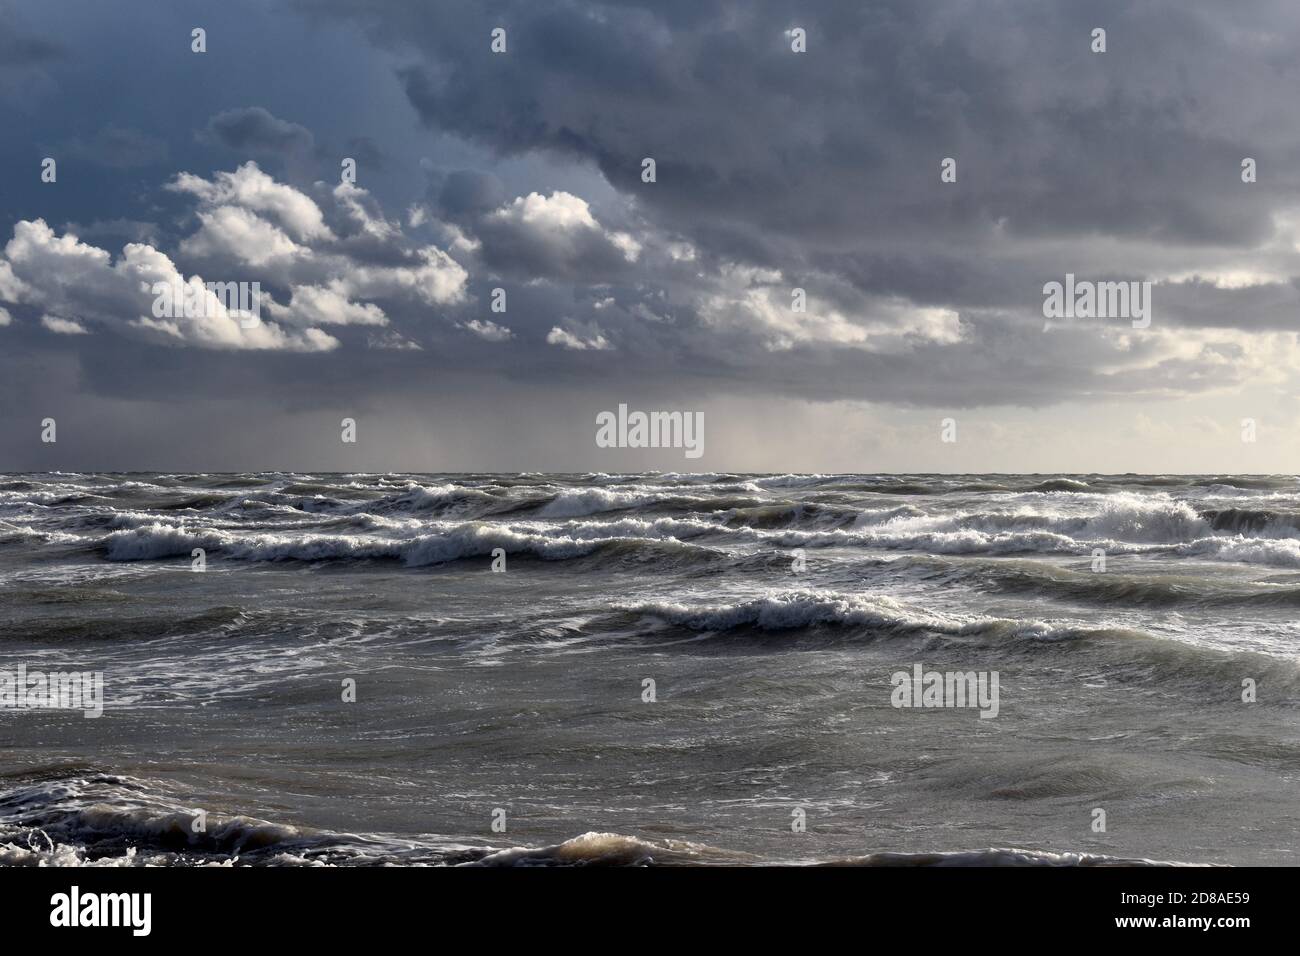 Stürmisches Wetter am Tyrrenischen Meer. Große Wellen. Graue und tiefblaue Farben. Himmel bedeckt mit grauen Wolken. Stockfoto